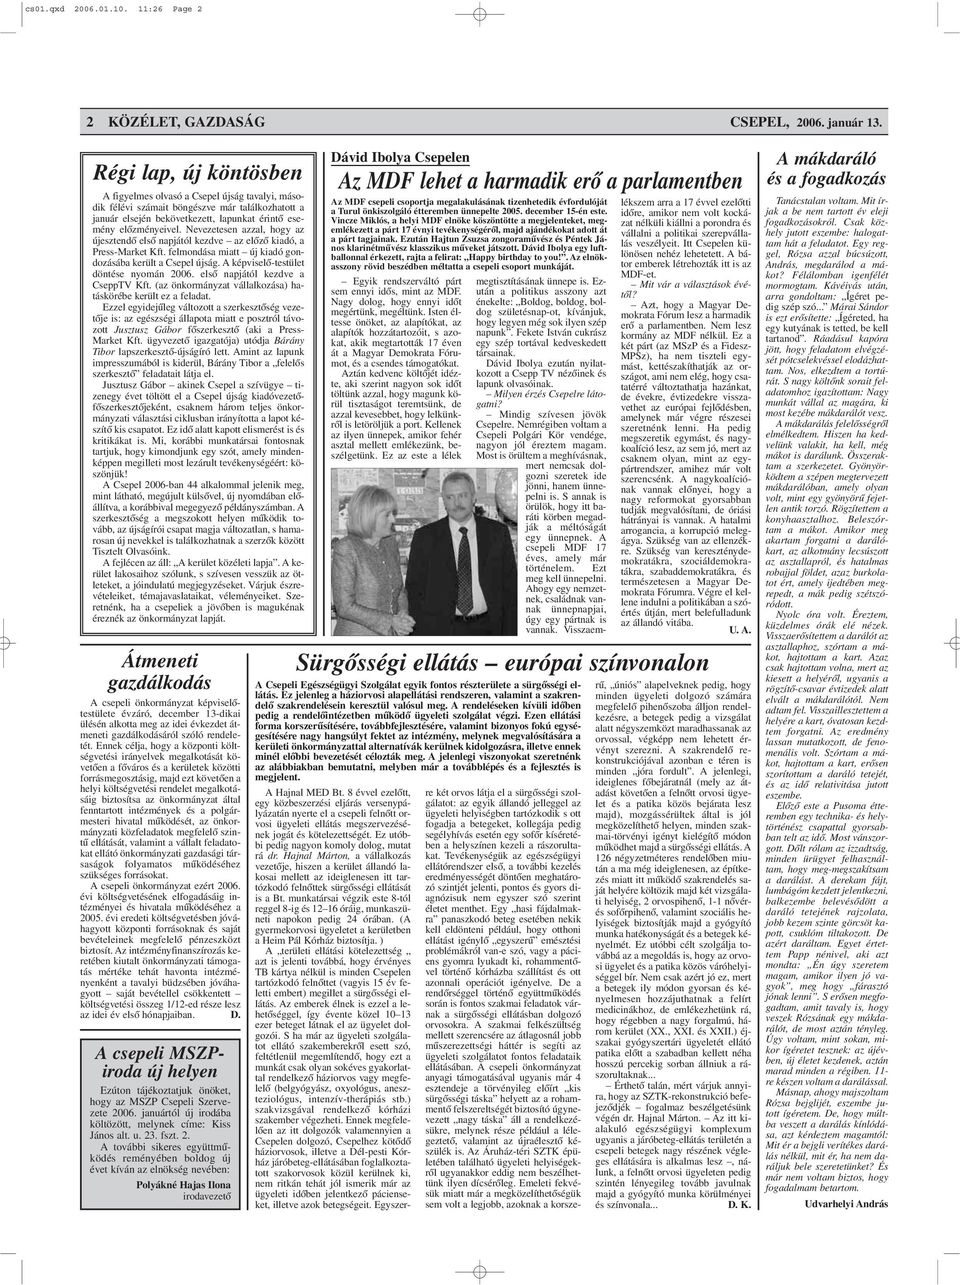 Nevezetesen azzal, hogy az újesztendõ elsõ napjától kezdve az elõzõ kiadó, a Press-Market Kft. felmondása miatt új kiadó gondozásába került a Csepel újság. A képviselõ-testület döntése nyomán 2006.